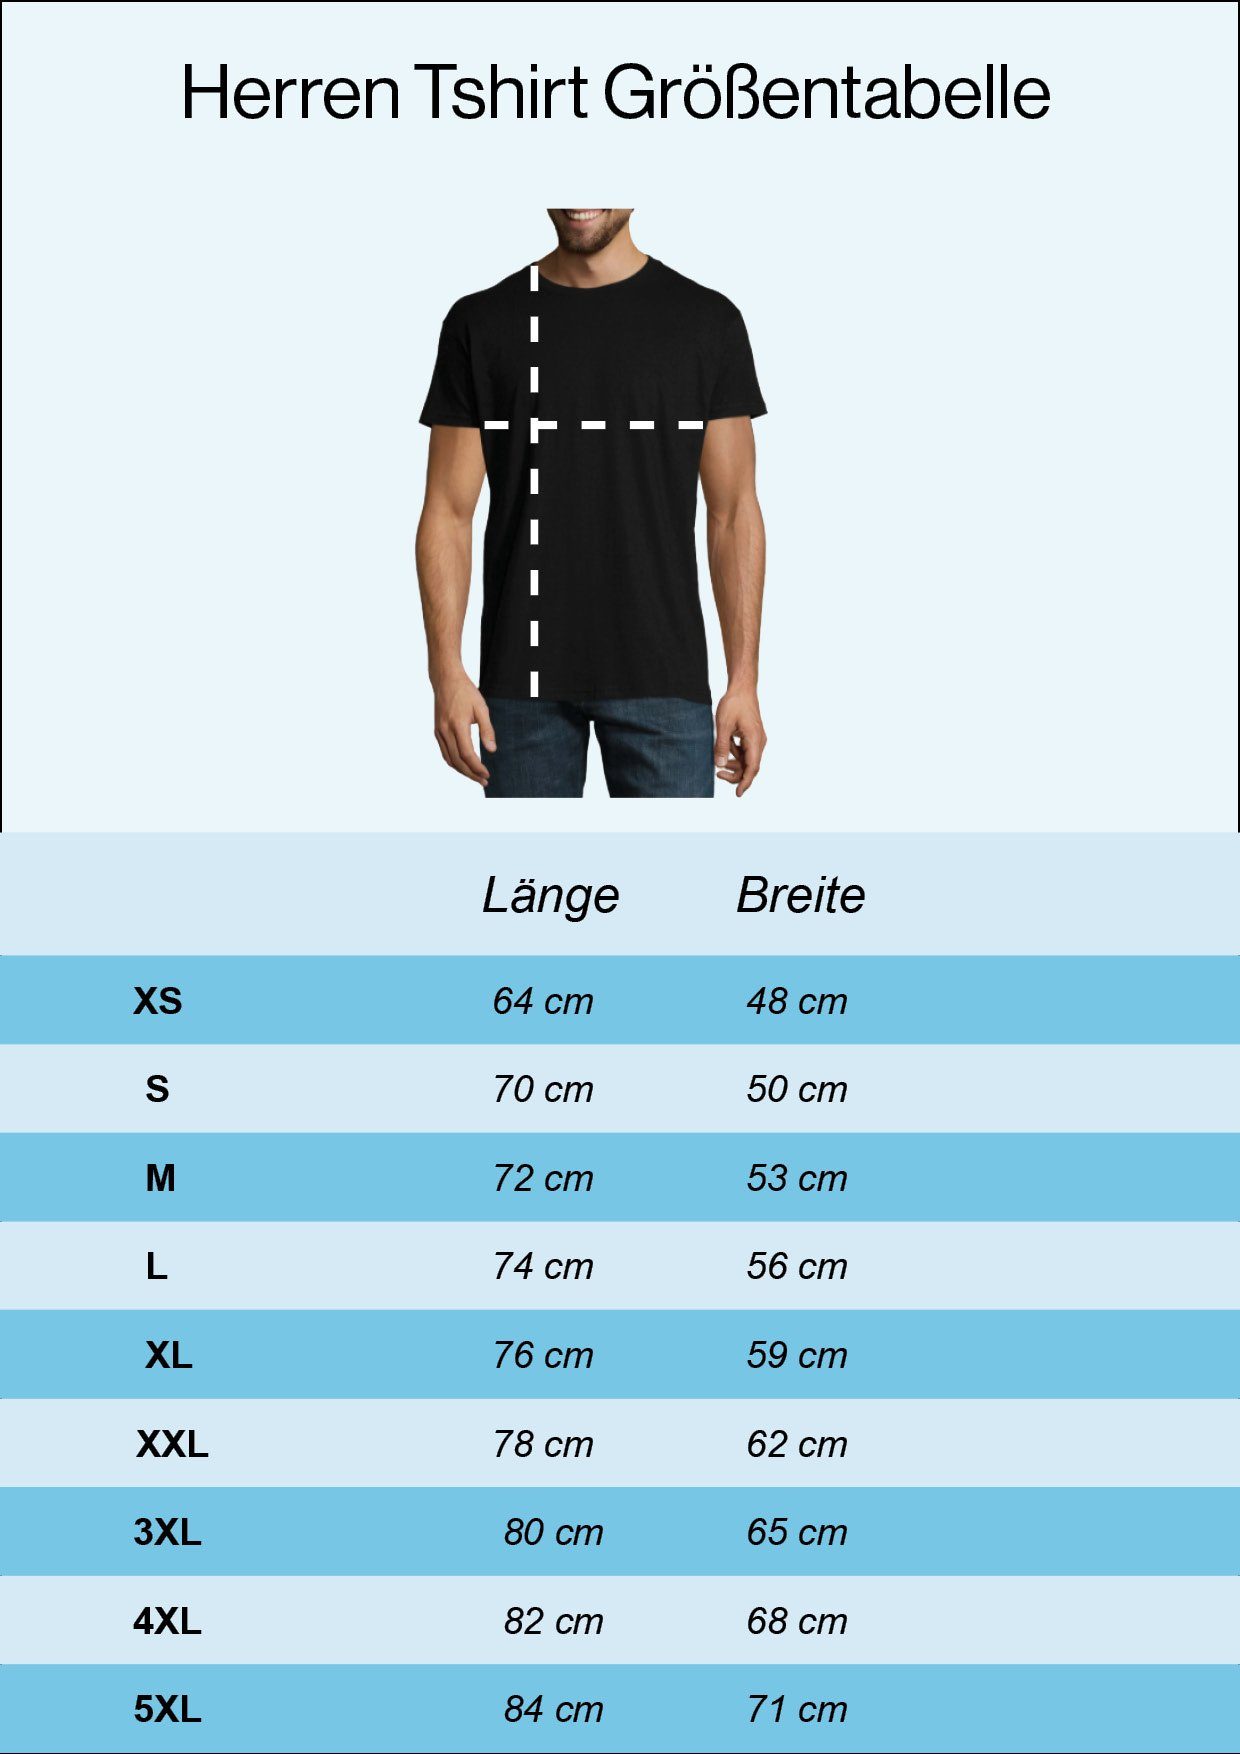 Youth Designz T-Shirt König Der Shirt lustigem Herren Baustelle mit Frontprint Grau Traktor